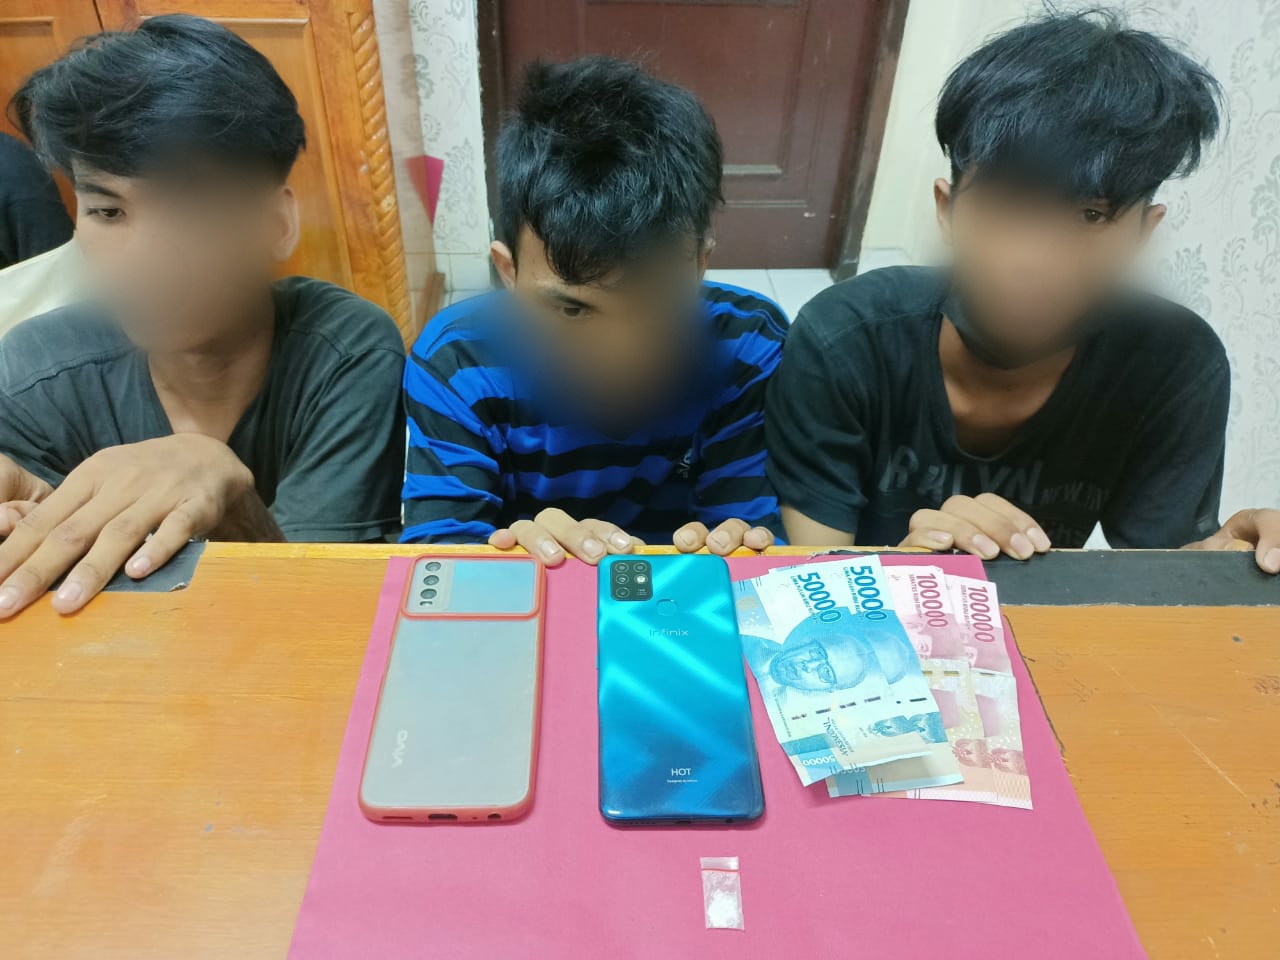 Polres Siak Kembali Amankan 3 Pria Remaja Karena Mengedar Sabu di Kecamatan Tualang